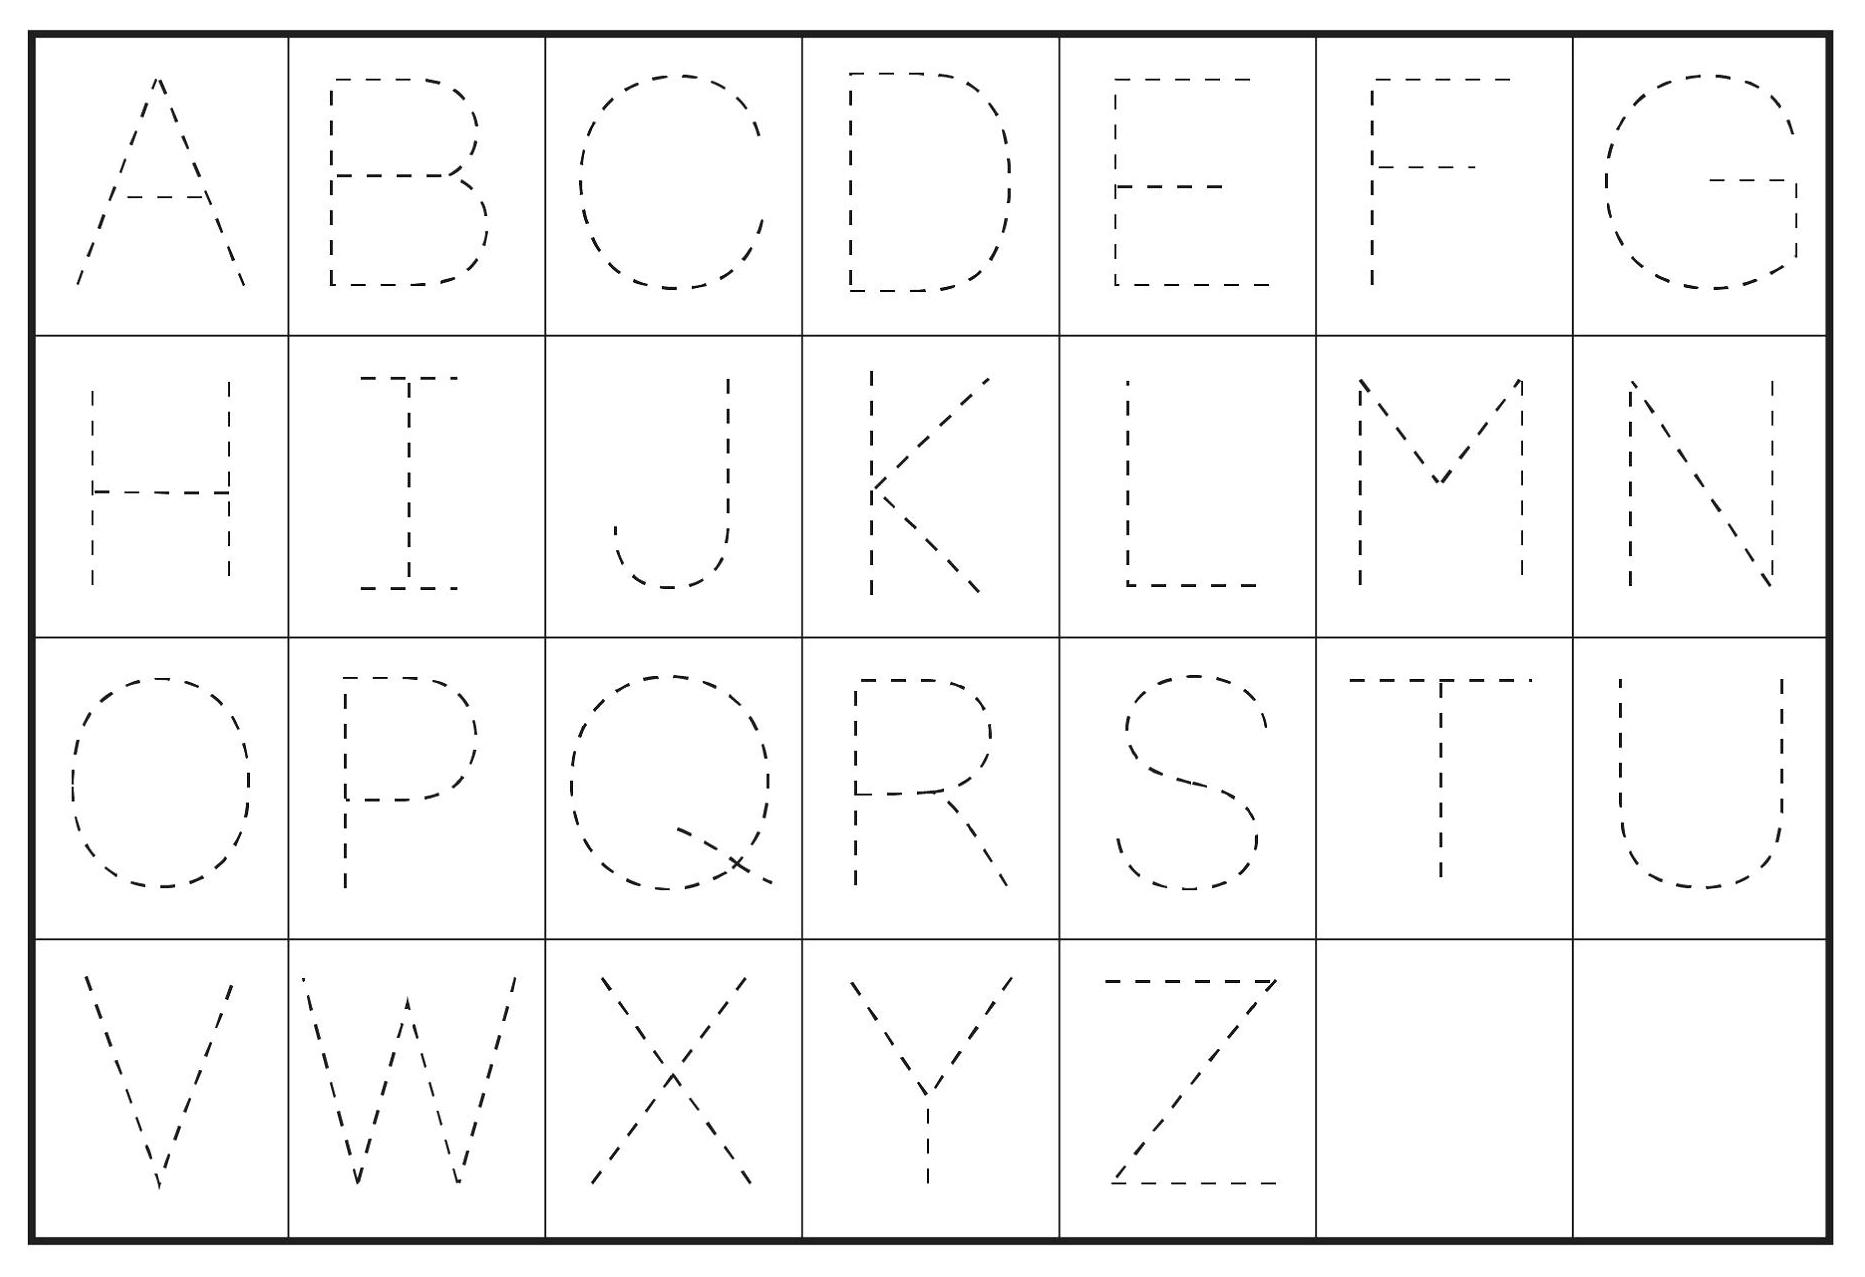 Free Alphabet Printables For Preschool Digitally Credible Calendars Free Alphabet Printables